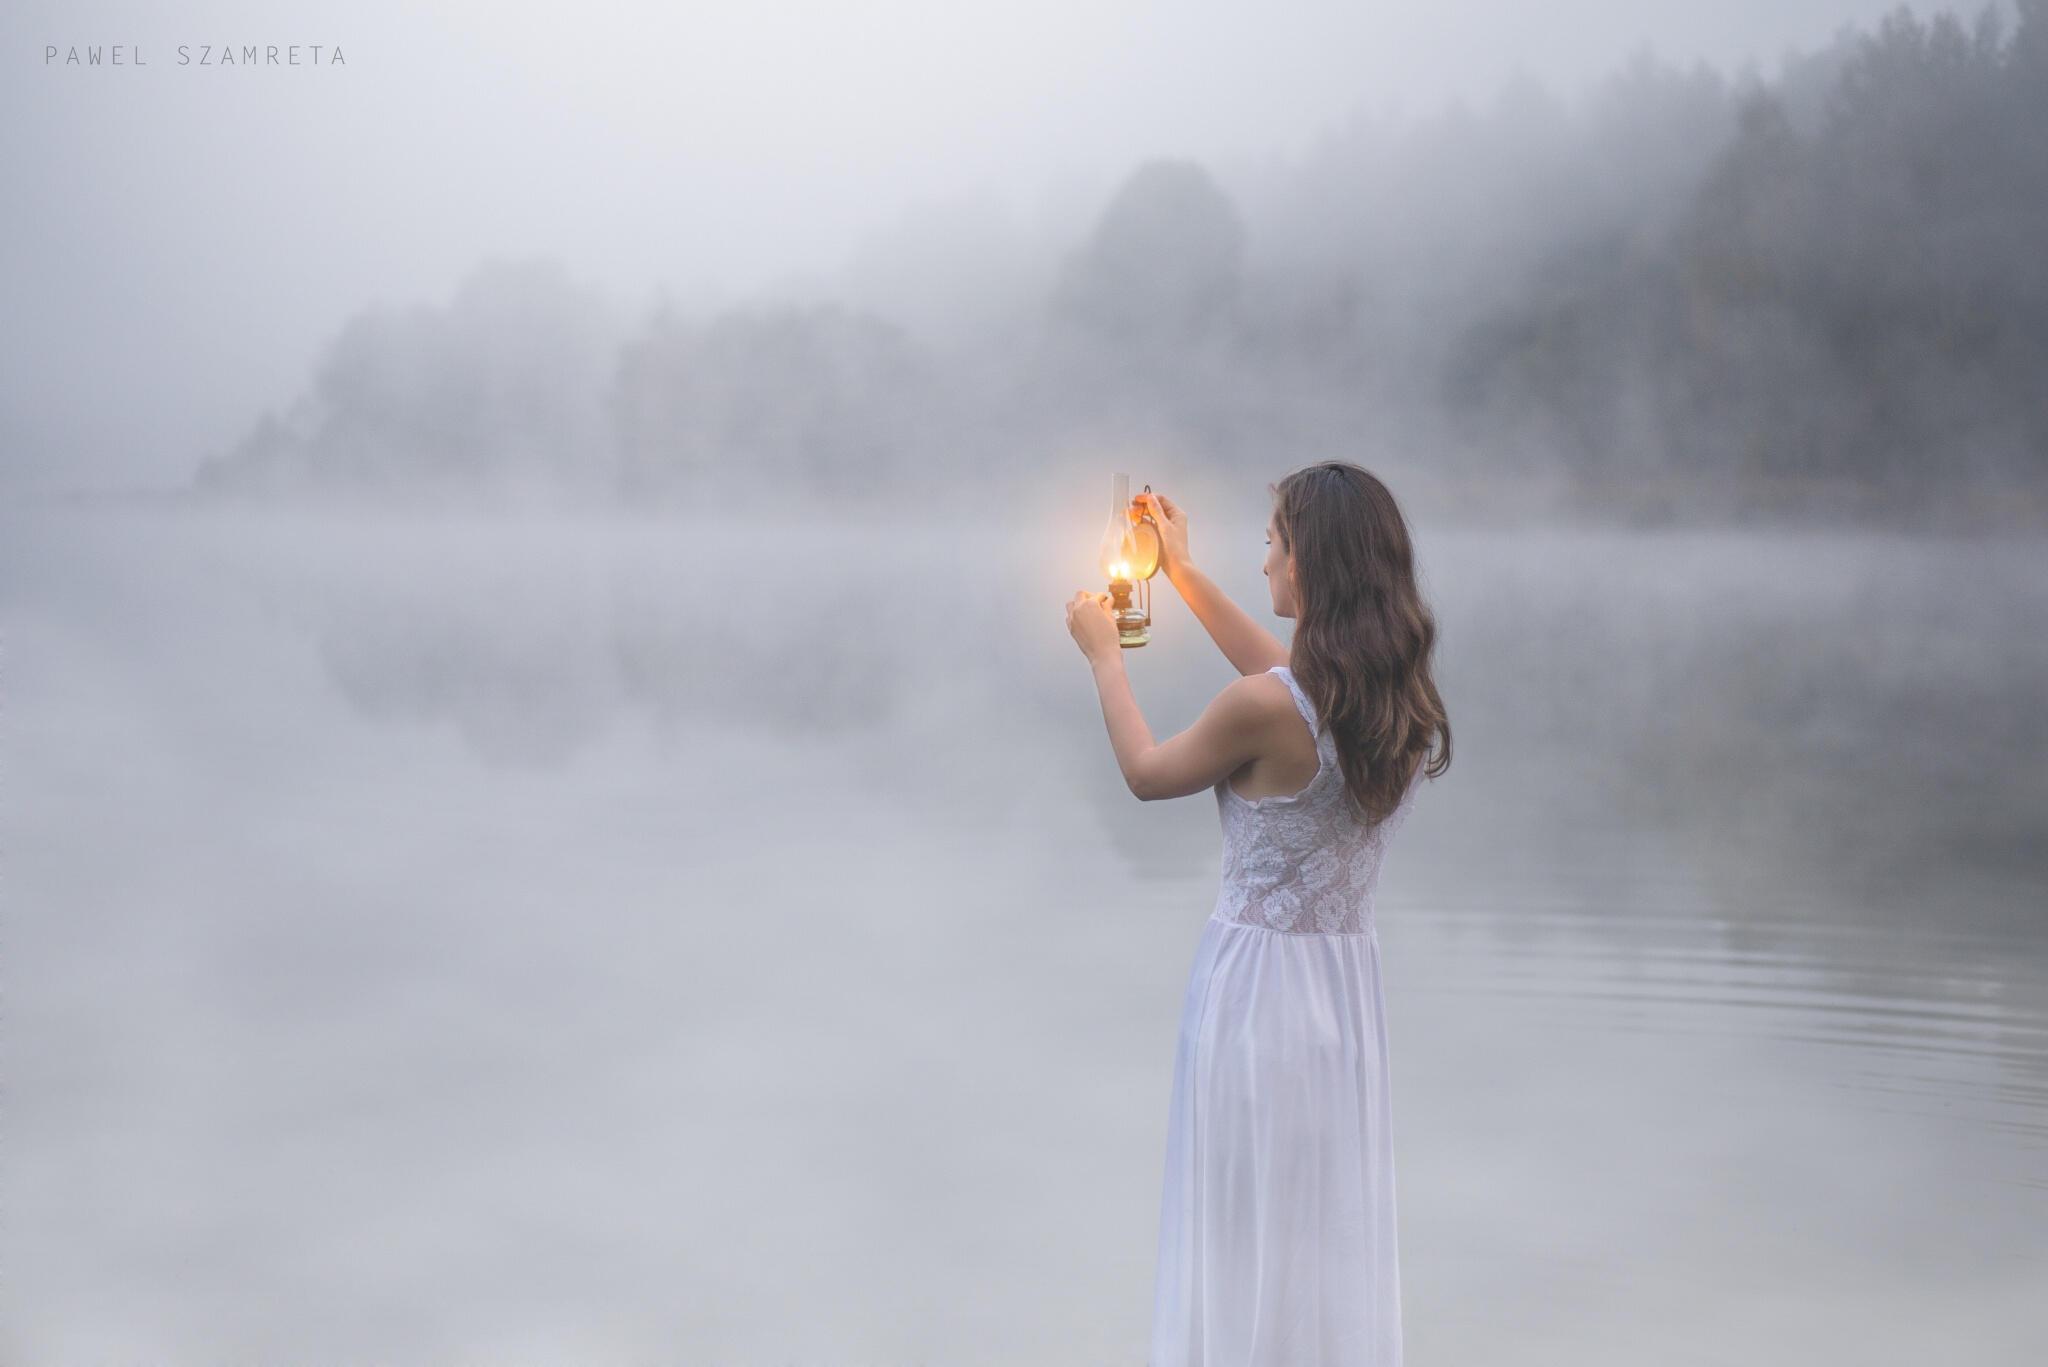 Жить мотив. Девушка в тумане. Фотосессия в тумане. Женщина в утреннем тумане. Образ женщины в тумане.